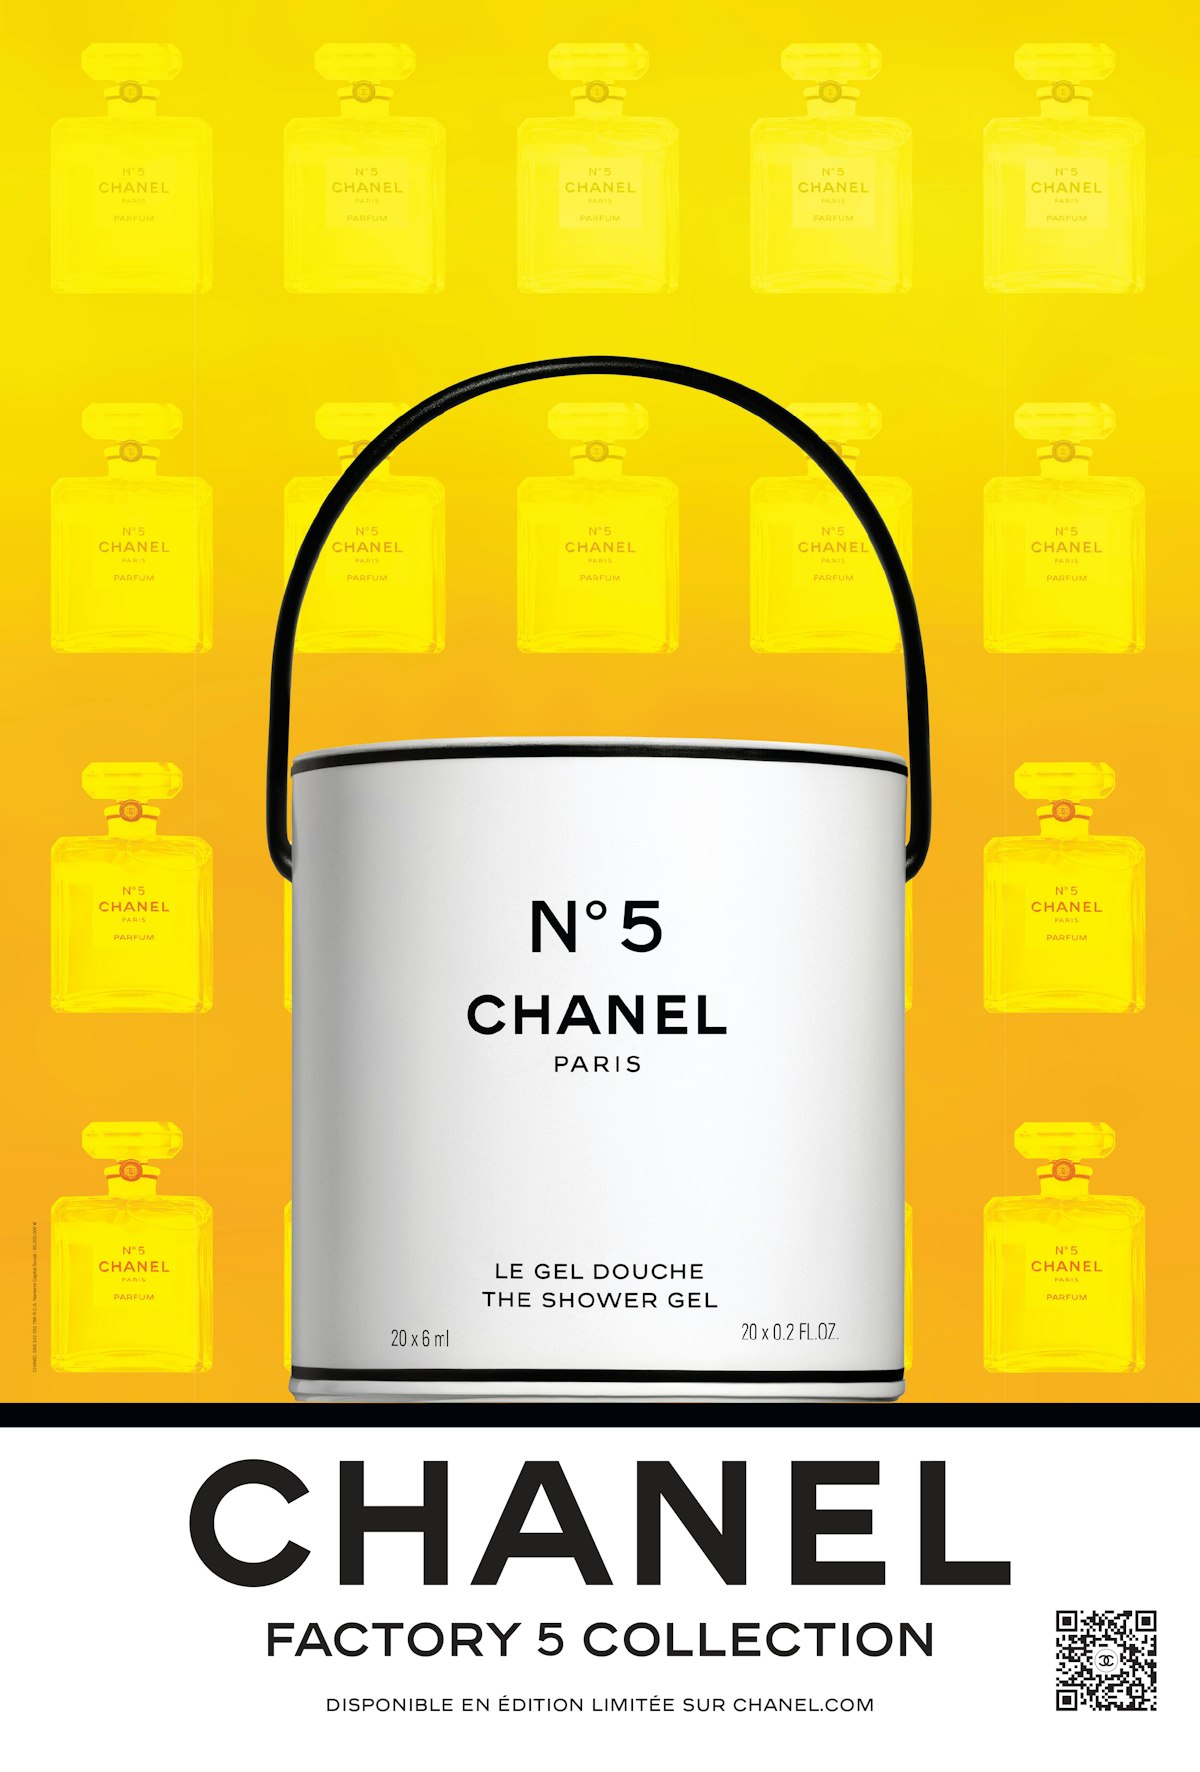 No 5 Chanel - 302 For Sale on 1stDibs  chanel no 5 handbag, chanel no 5 bag  price, chanel no5